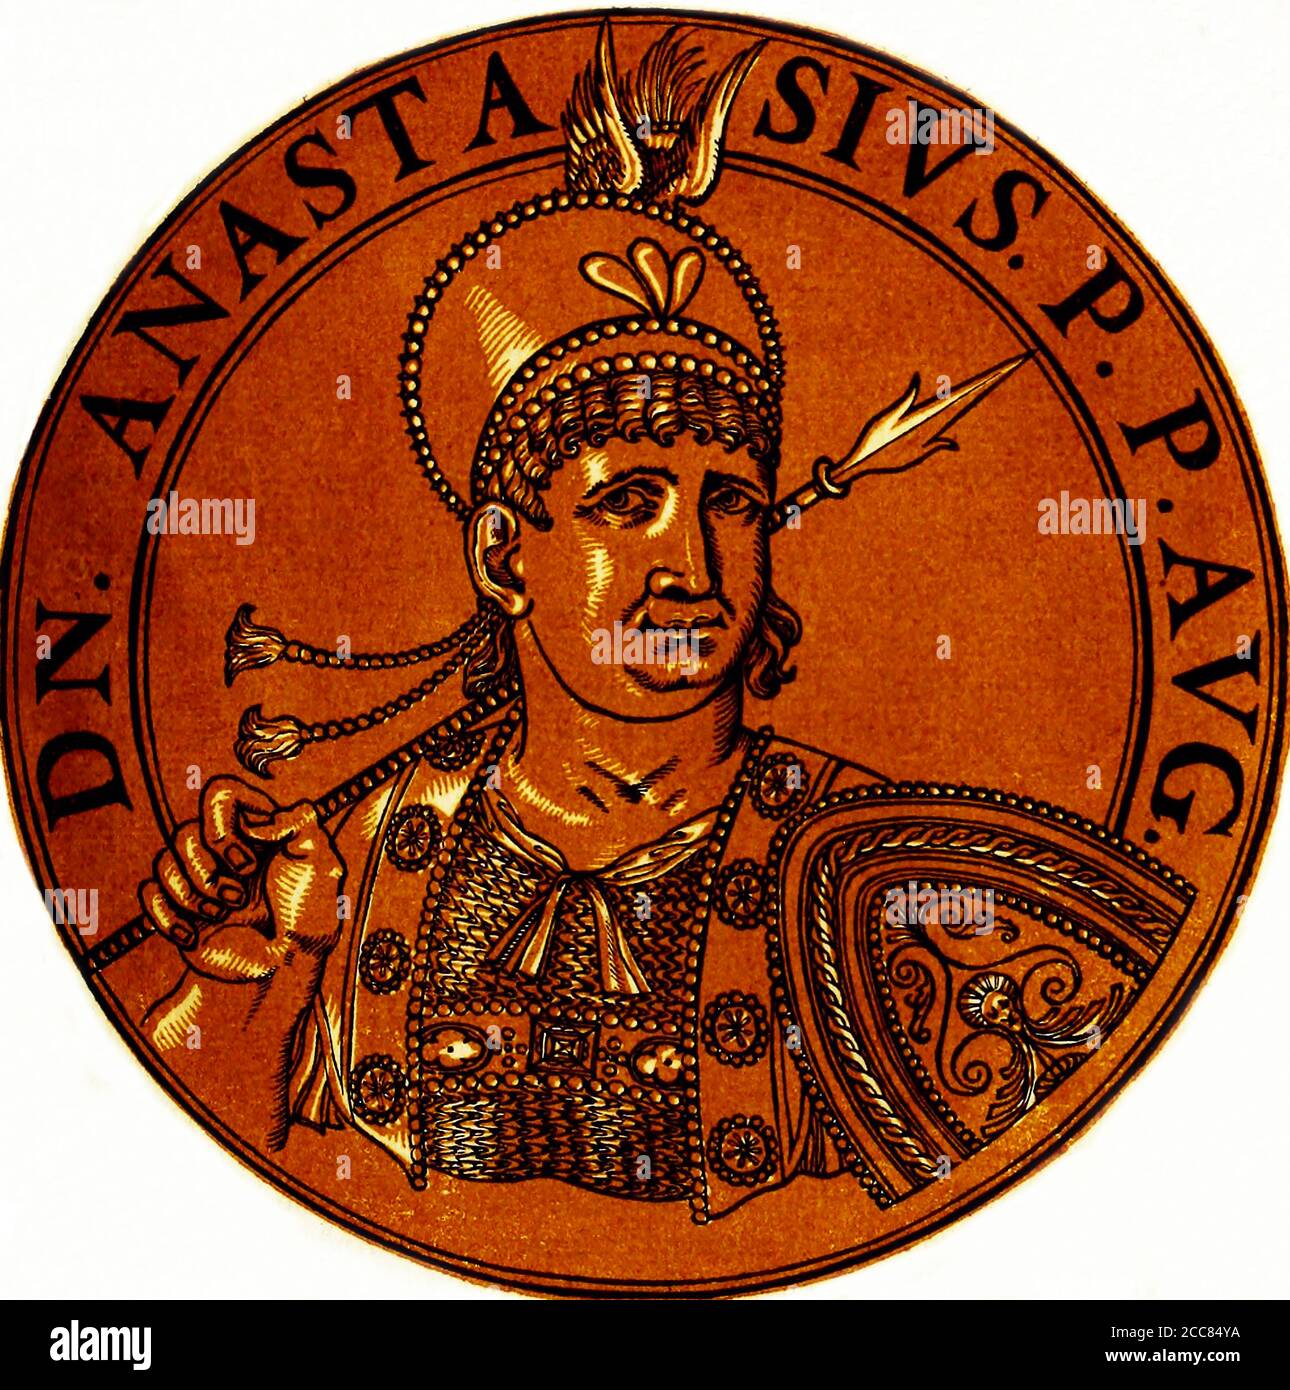 Turquie / Byzance: Anastasius II (-719), empereur byzantin, du livre Icones imperatorvm romanorvm (Icons of Roman Emperors), Anvers, c. 1645. Anastasius II, également connu sous le nom d'Anastasios II et à l'origine nommé Artemius, était un bureaucrate et secrétaire impérial dans la cour byzantine. Il a été proclamé empereur par l'armée Opsicienne après avoir renversé l'empereur Philipicus. Changeant de nom pour Anastasius, il prit le trône et tourna sur ceux qui avaient aidé à sa montée en exécutant ceux directement impliqués dans la conspiration contre Philipicus. Banque D'Images